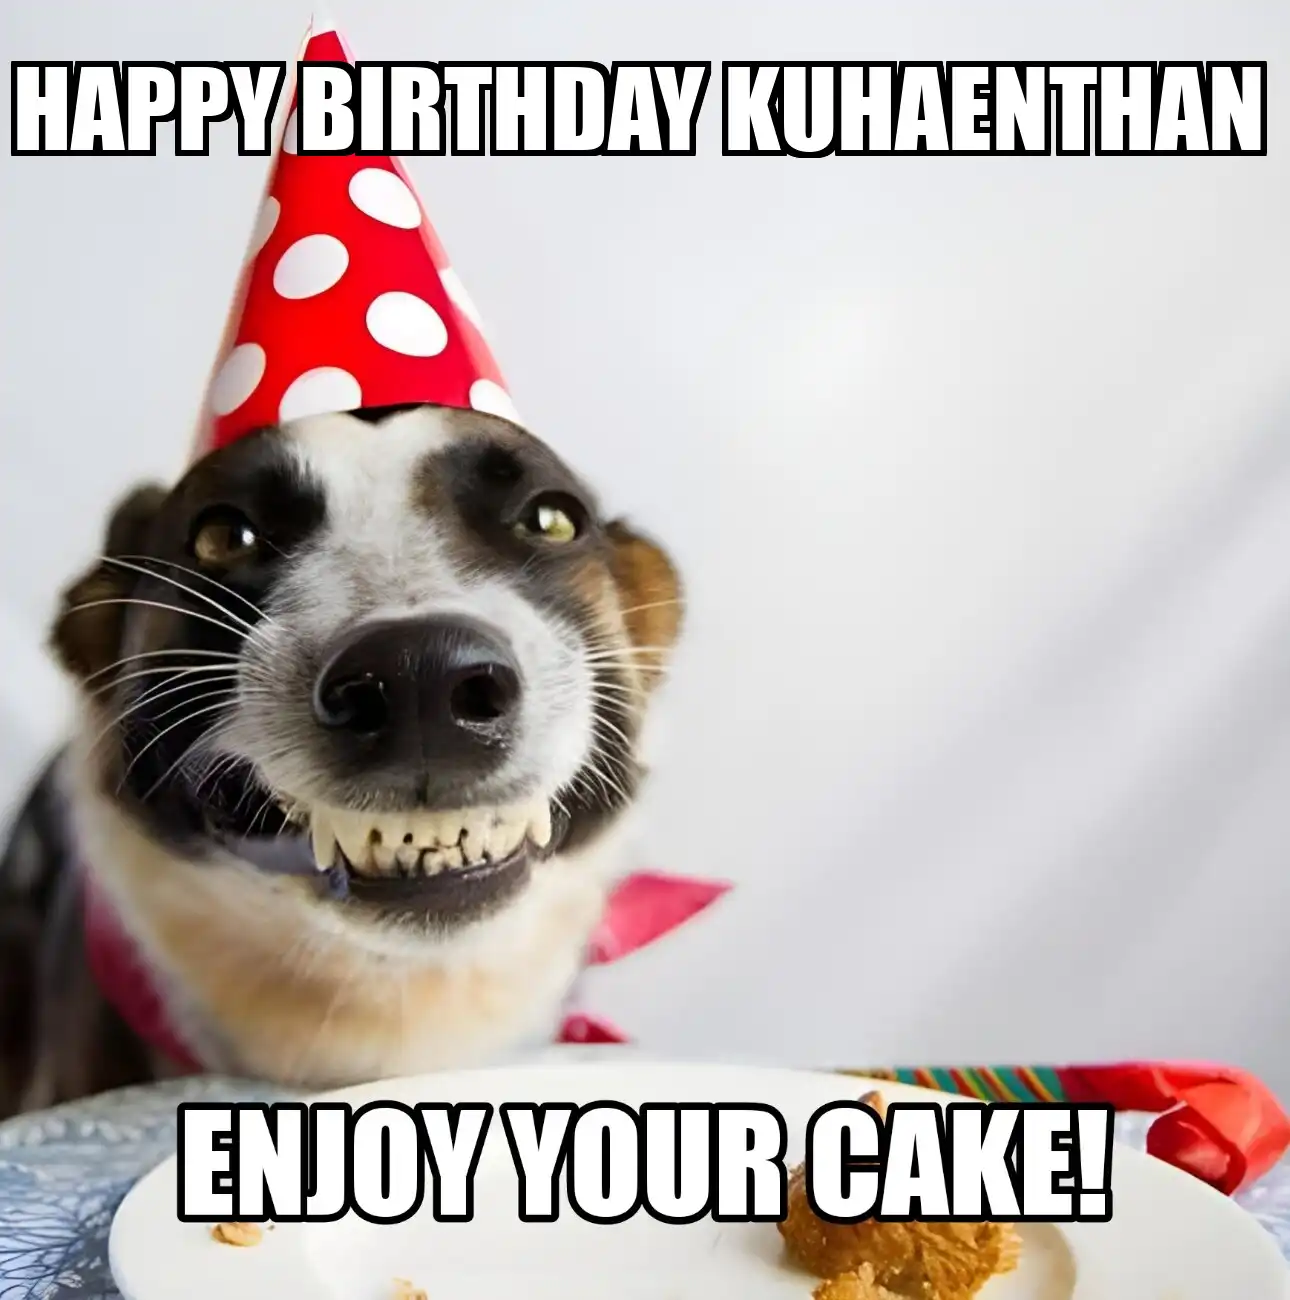 Happy Birthday Kuhaenthan Enjoy Your Cake Dog Meme